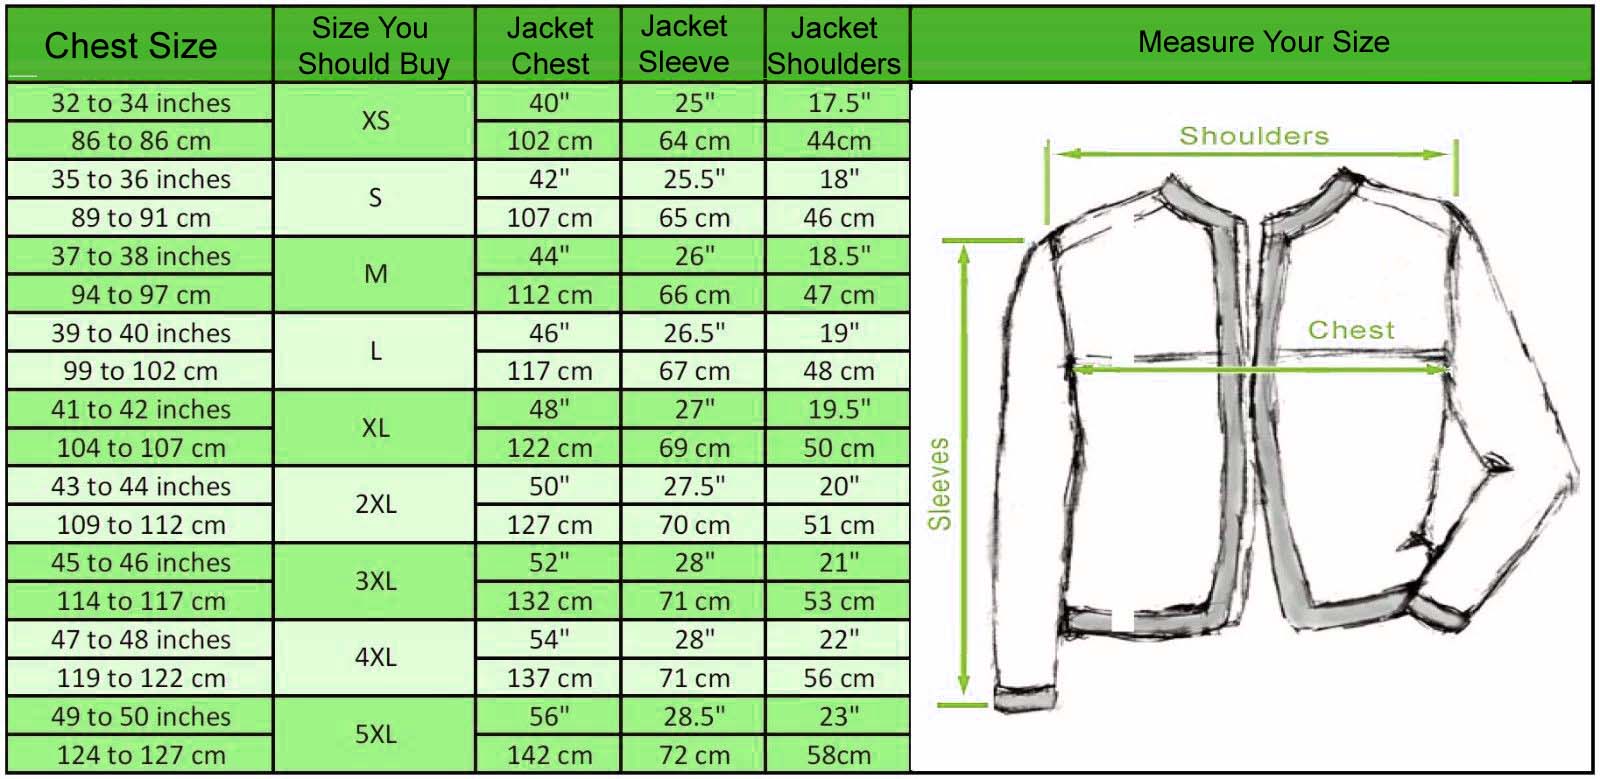 Size Chart - Flesh Jacket